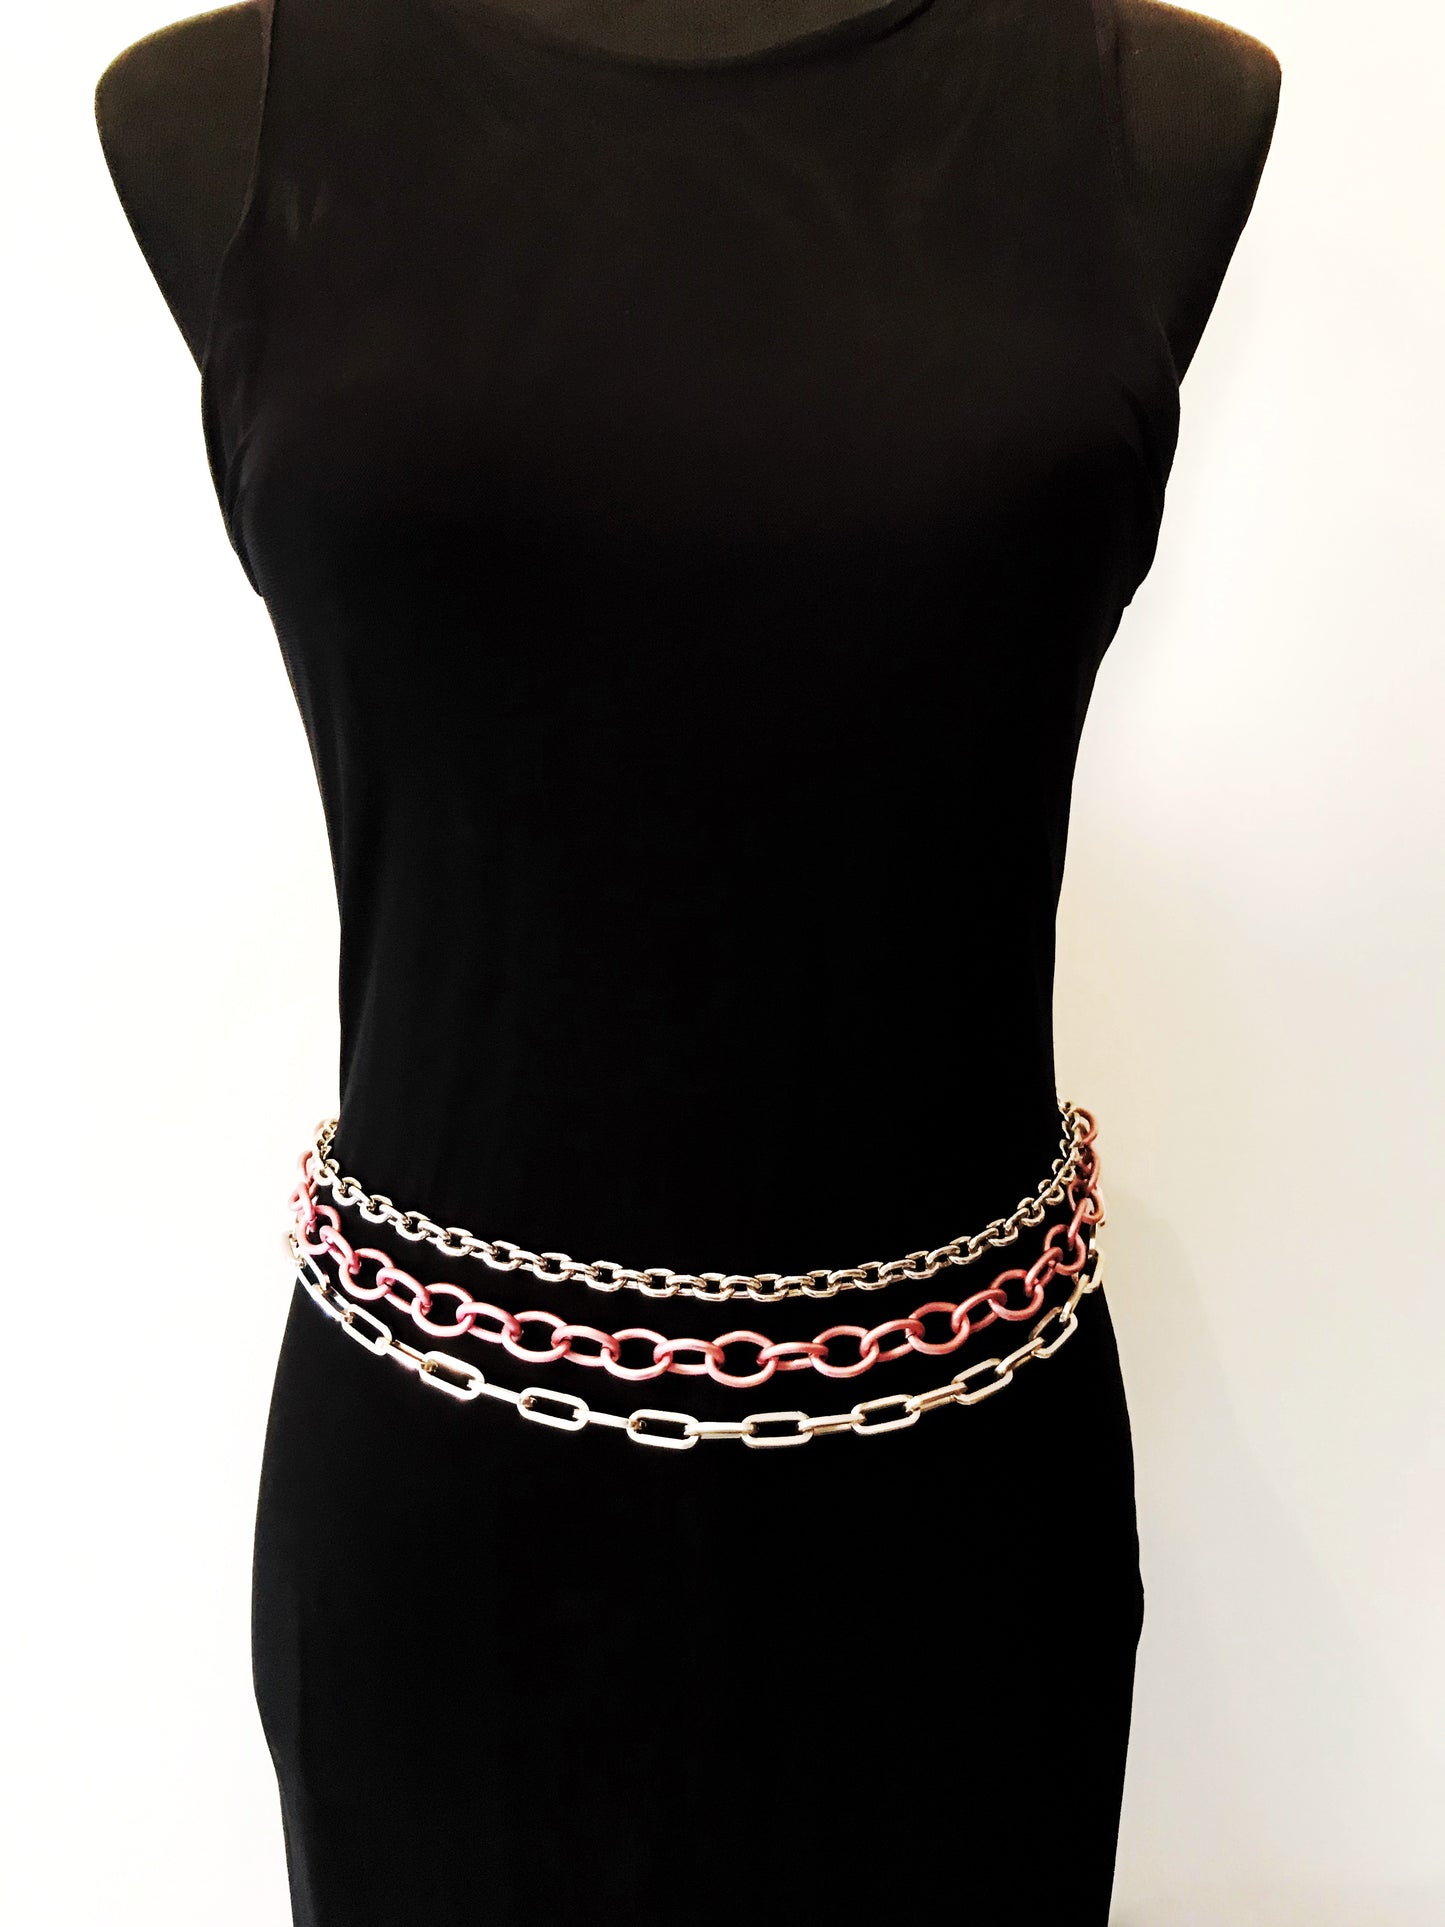 Cinturón cadena rosa y plata triple "Rock-color"